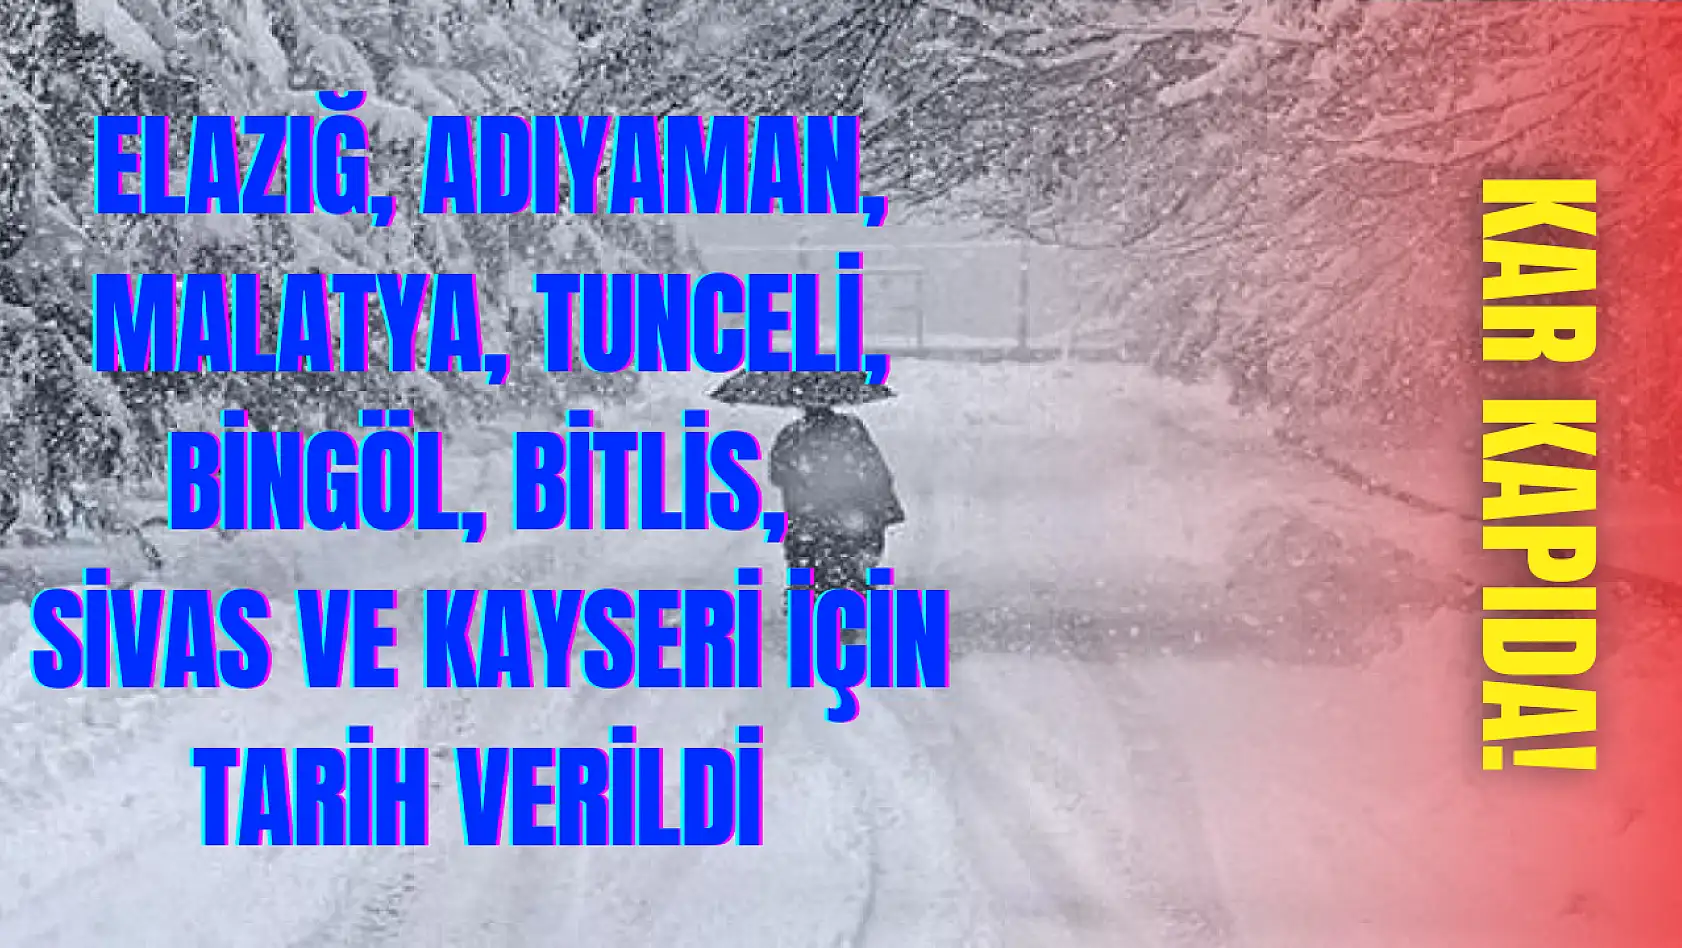 Elazığ, Adıyaman, Malatya, Tunceli, Bingöl, Bitlis, Sivas ve Kayseri için tarih verildi! Kar kapıda...